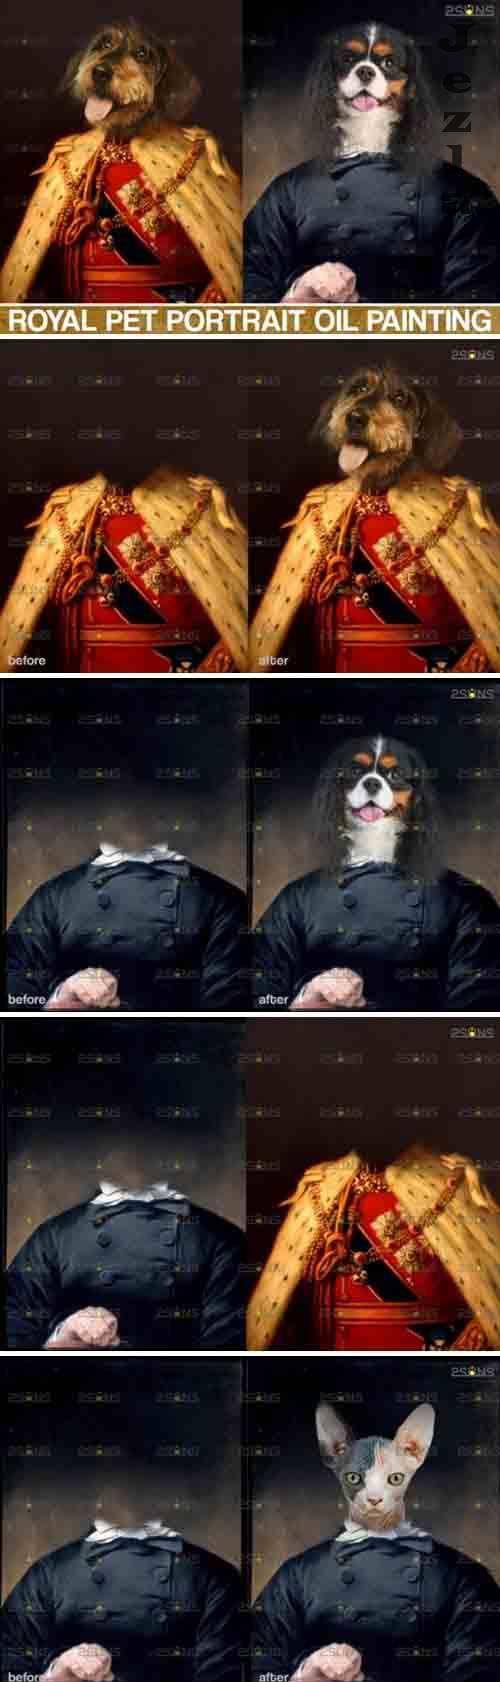 Royal Pet Portrait templates, Pet Painting Oil Photoshop v.2 - 578570